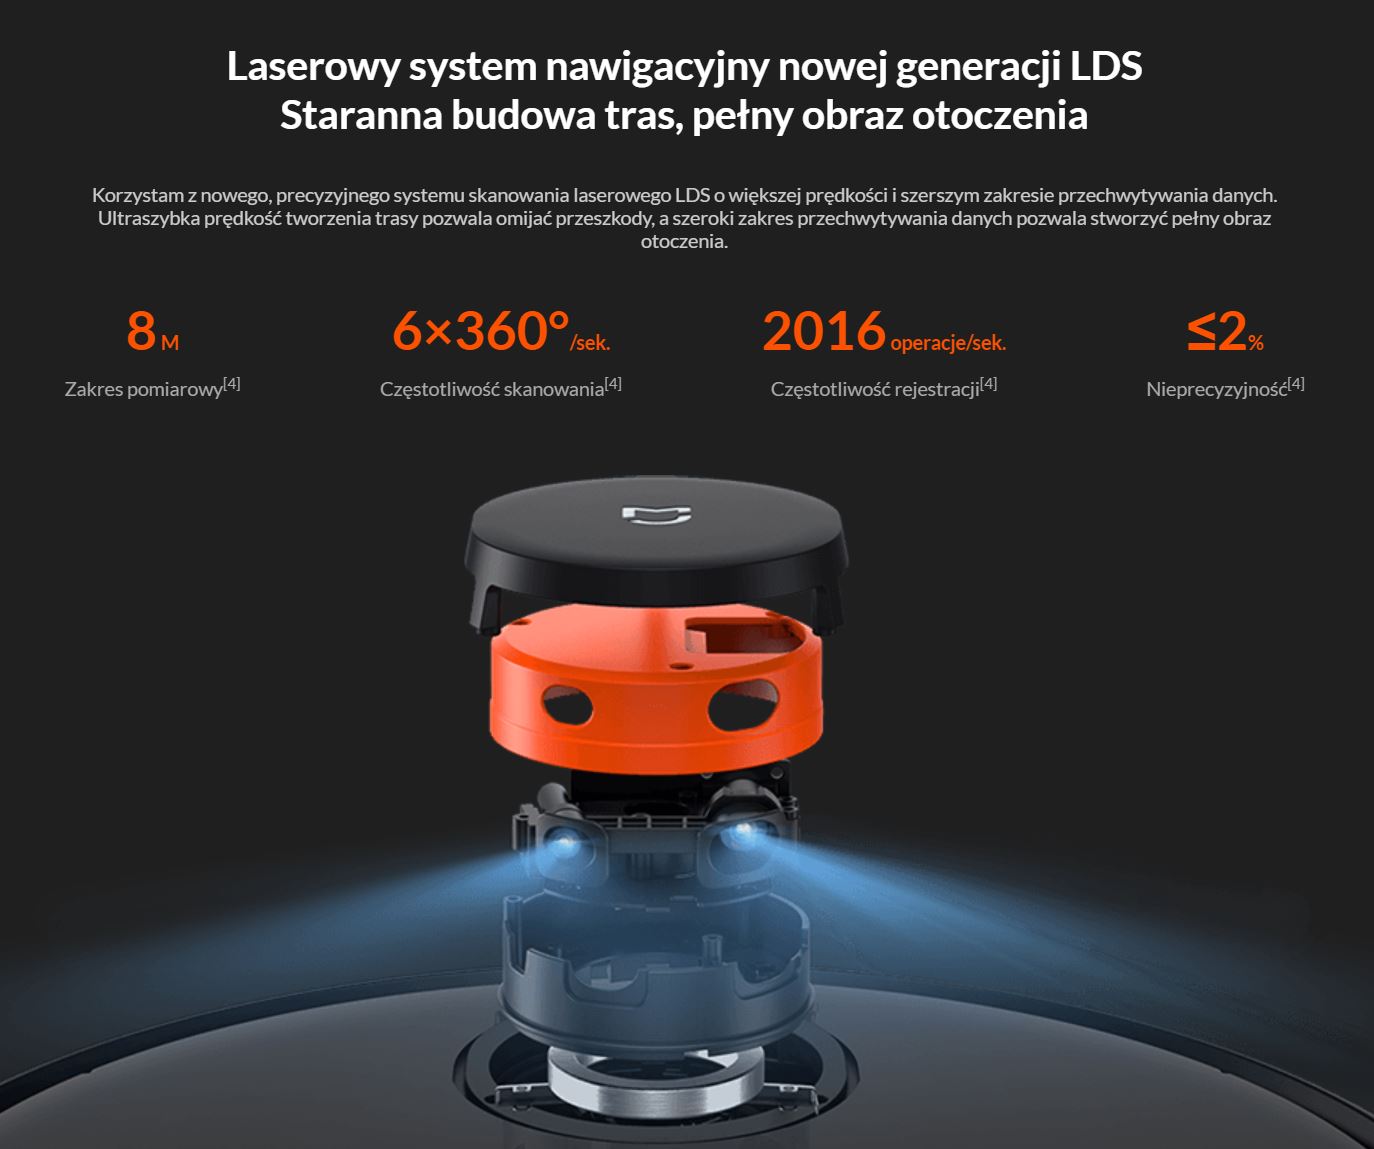 Najpopularniejsze roboty sprzątające - TOP 10 - Xiaomi Mi Robot PRO - laserowa nawigacja LDS